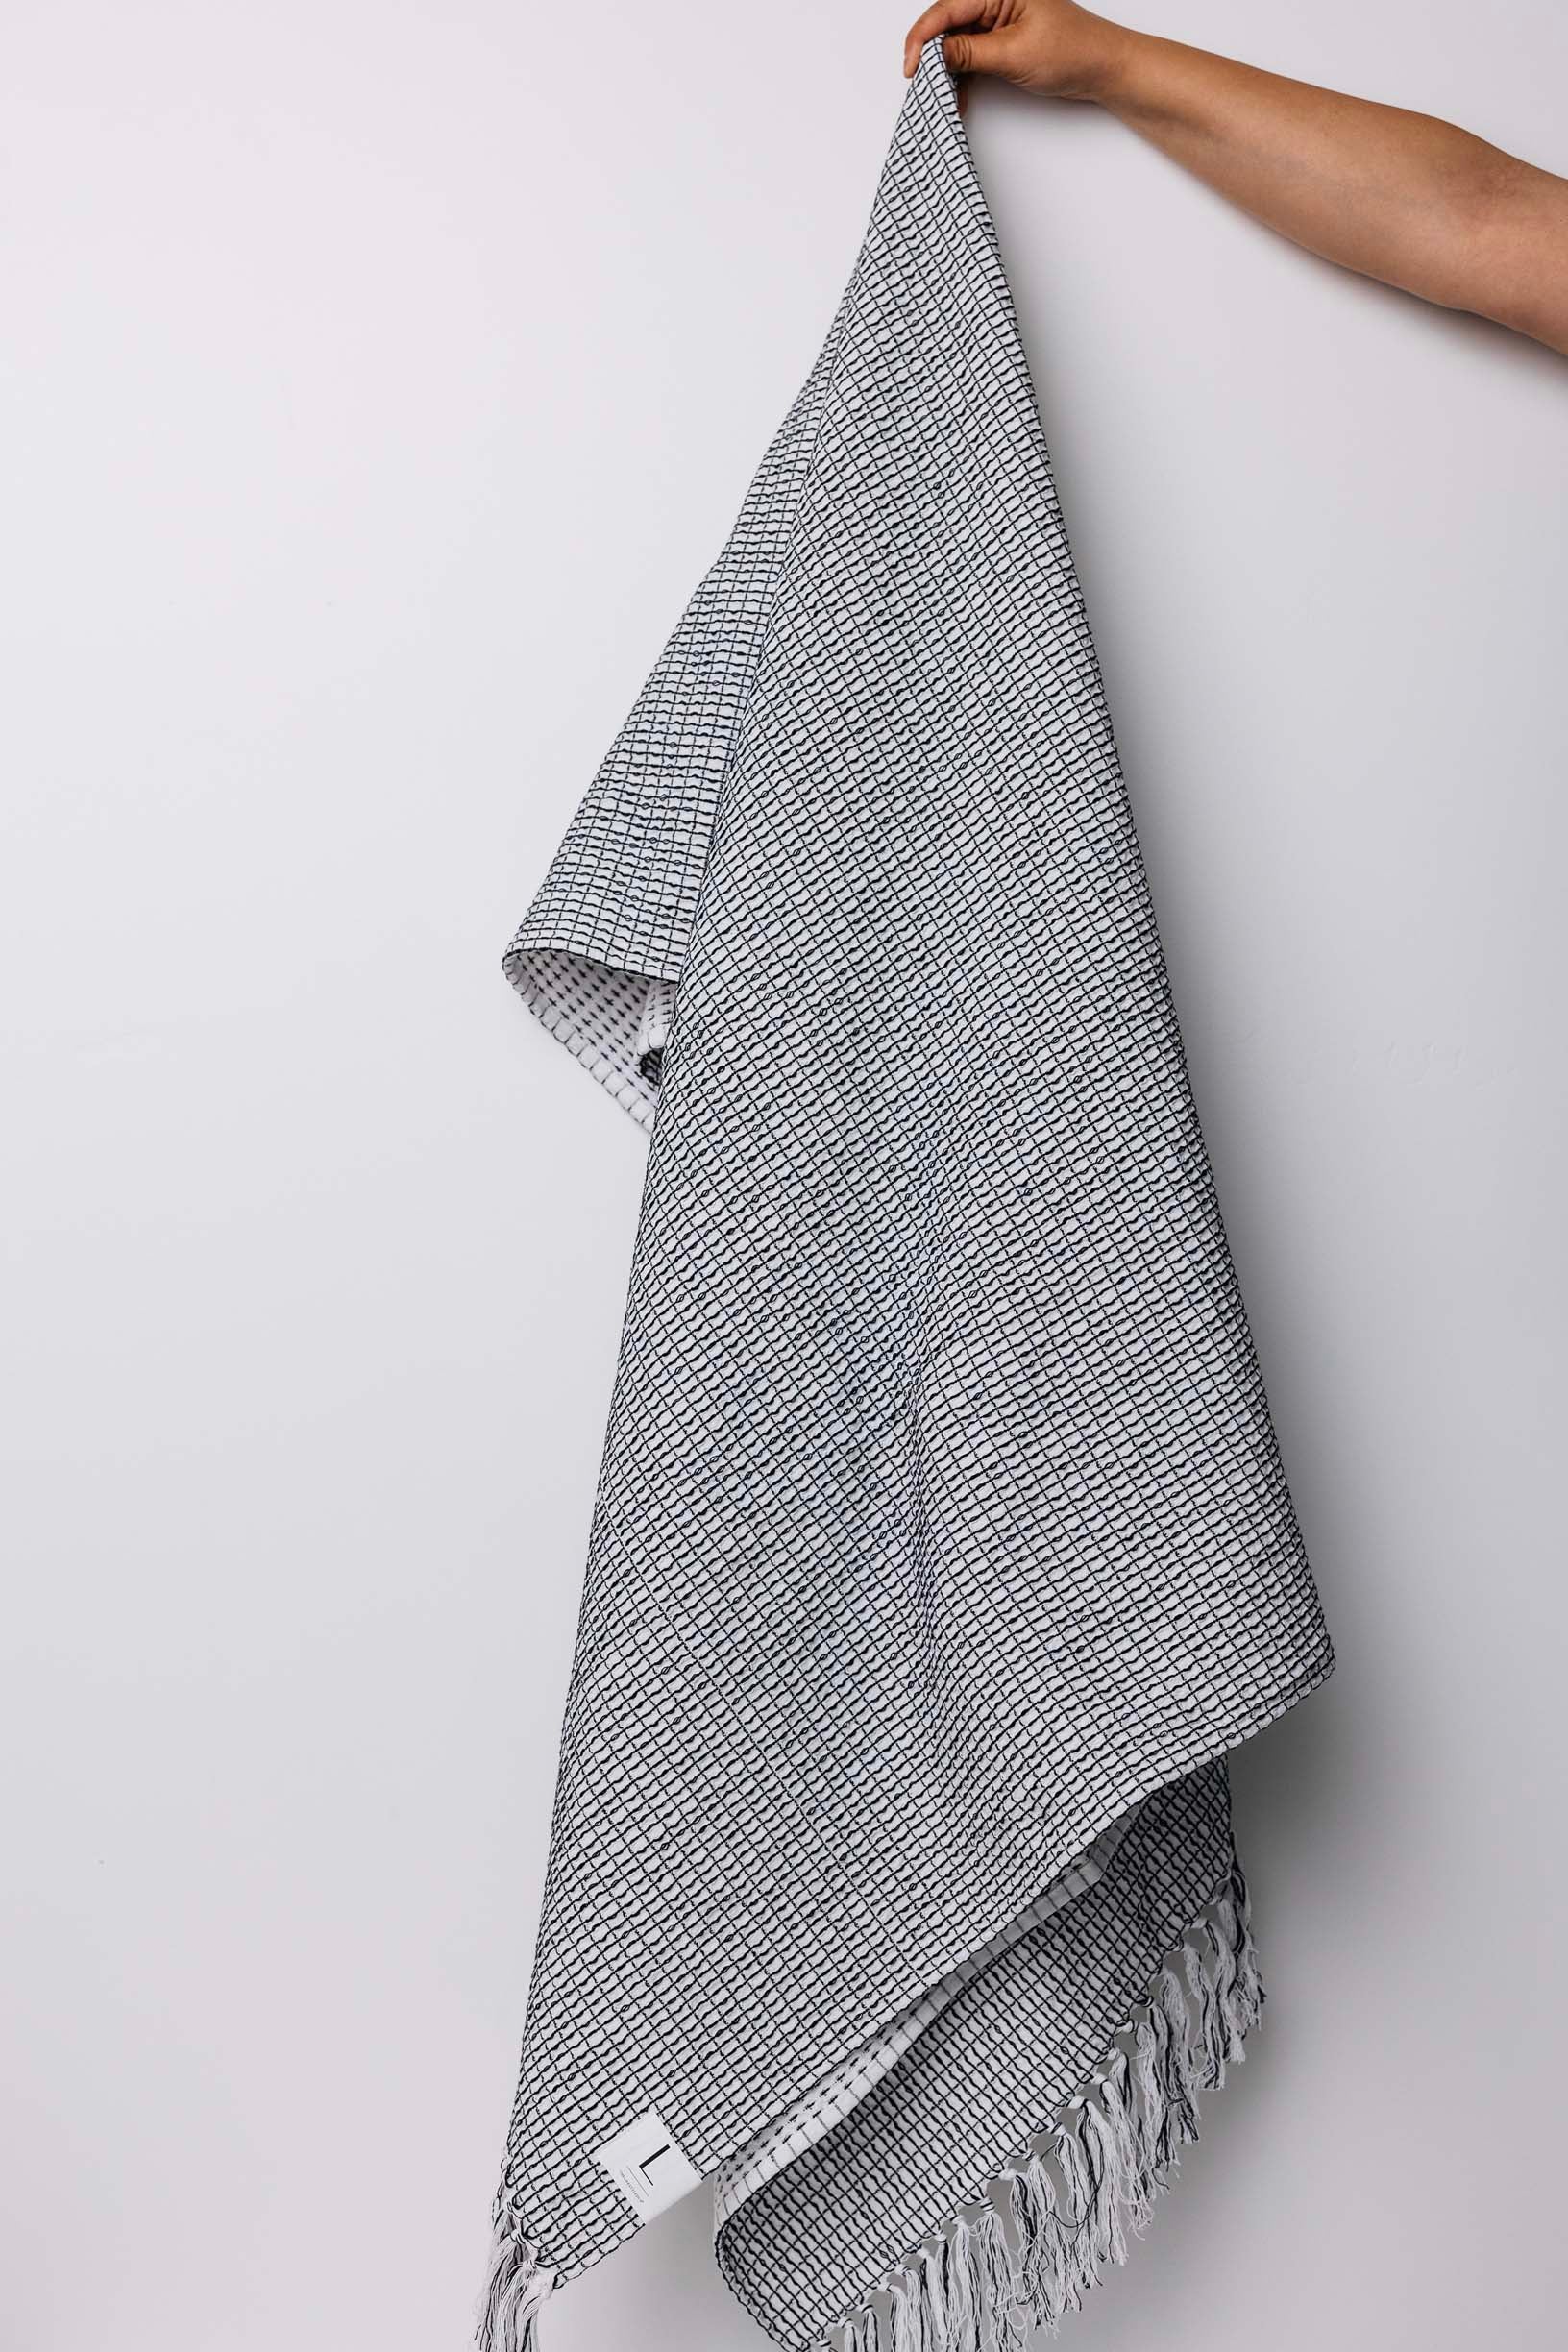 Misa Oversize Waffle Knit Throw Blanket - Black/White